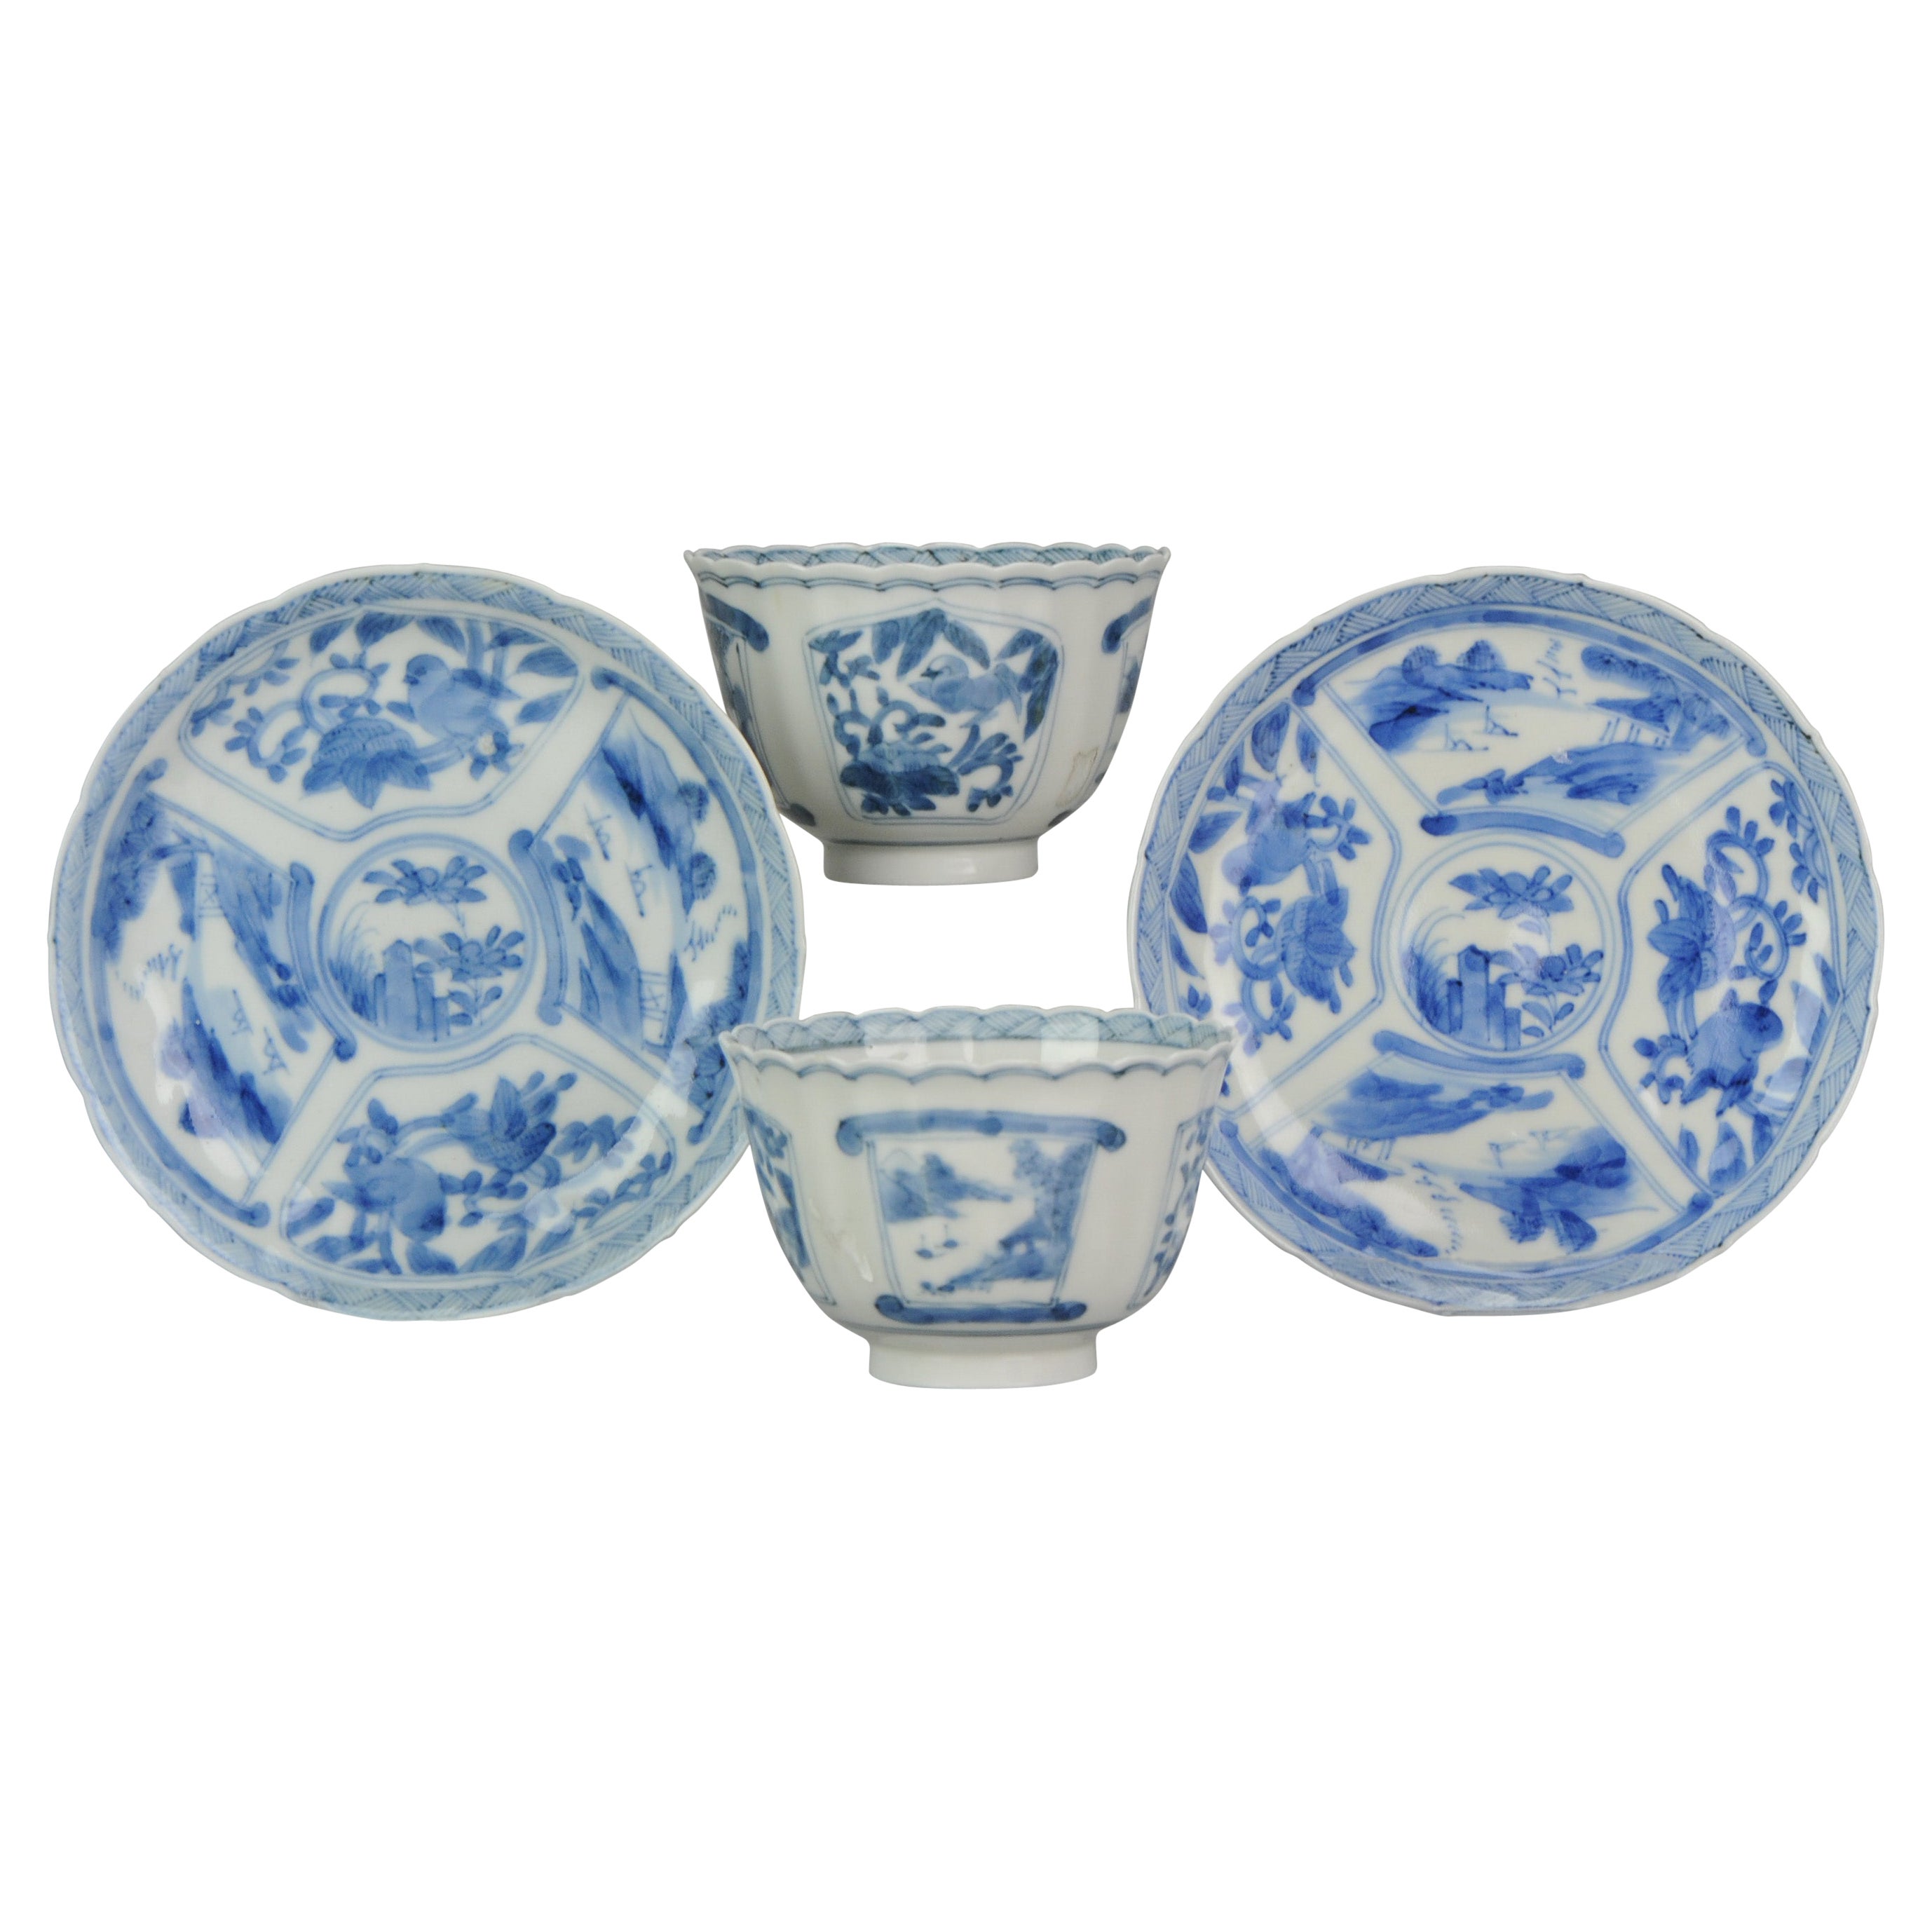 Pair Antique Meiji Porcelain Kangxi Revival Japanese Tea Bowls, 19th Century